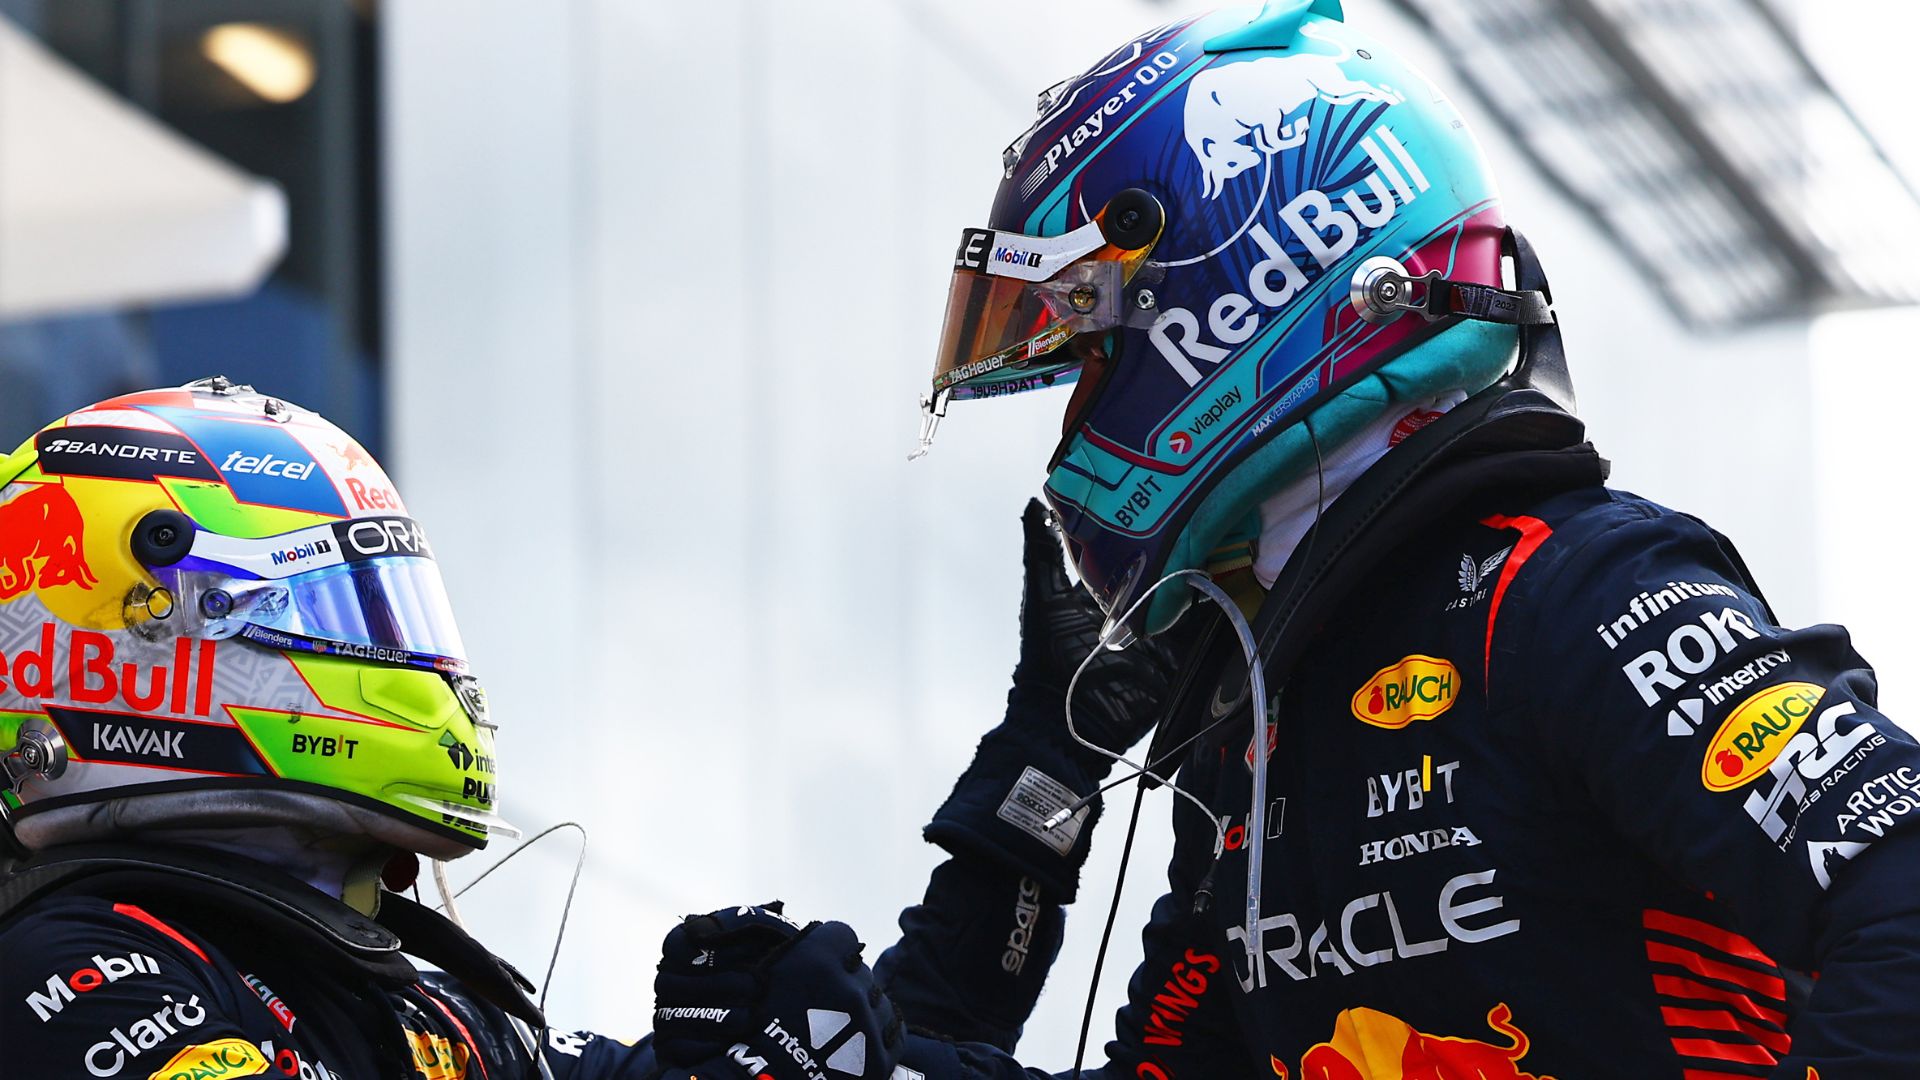 Cumprimento entre Sergio Pérez e Max Verstappen após a corrida (Crédito: Getty Images)